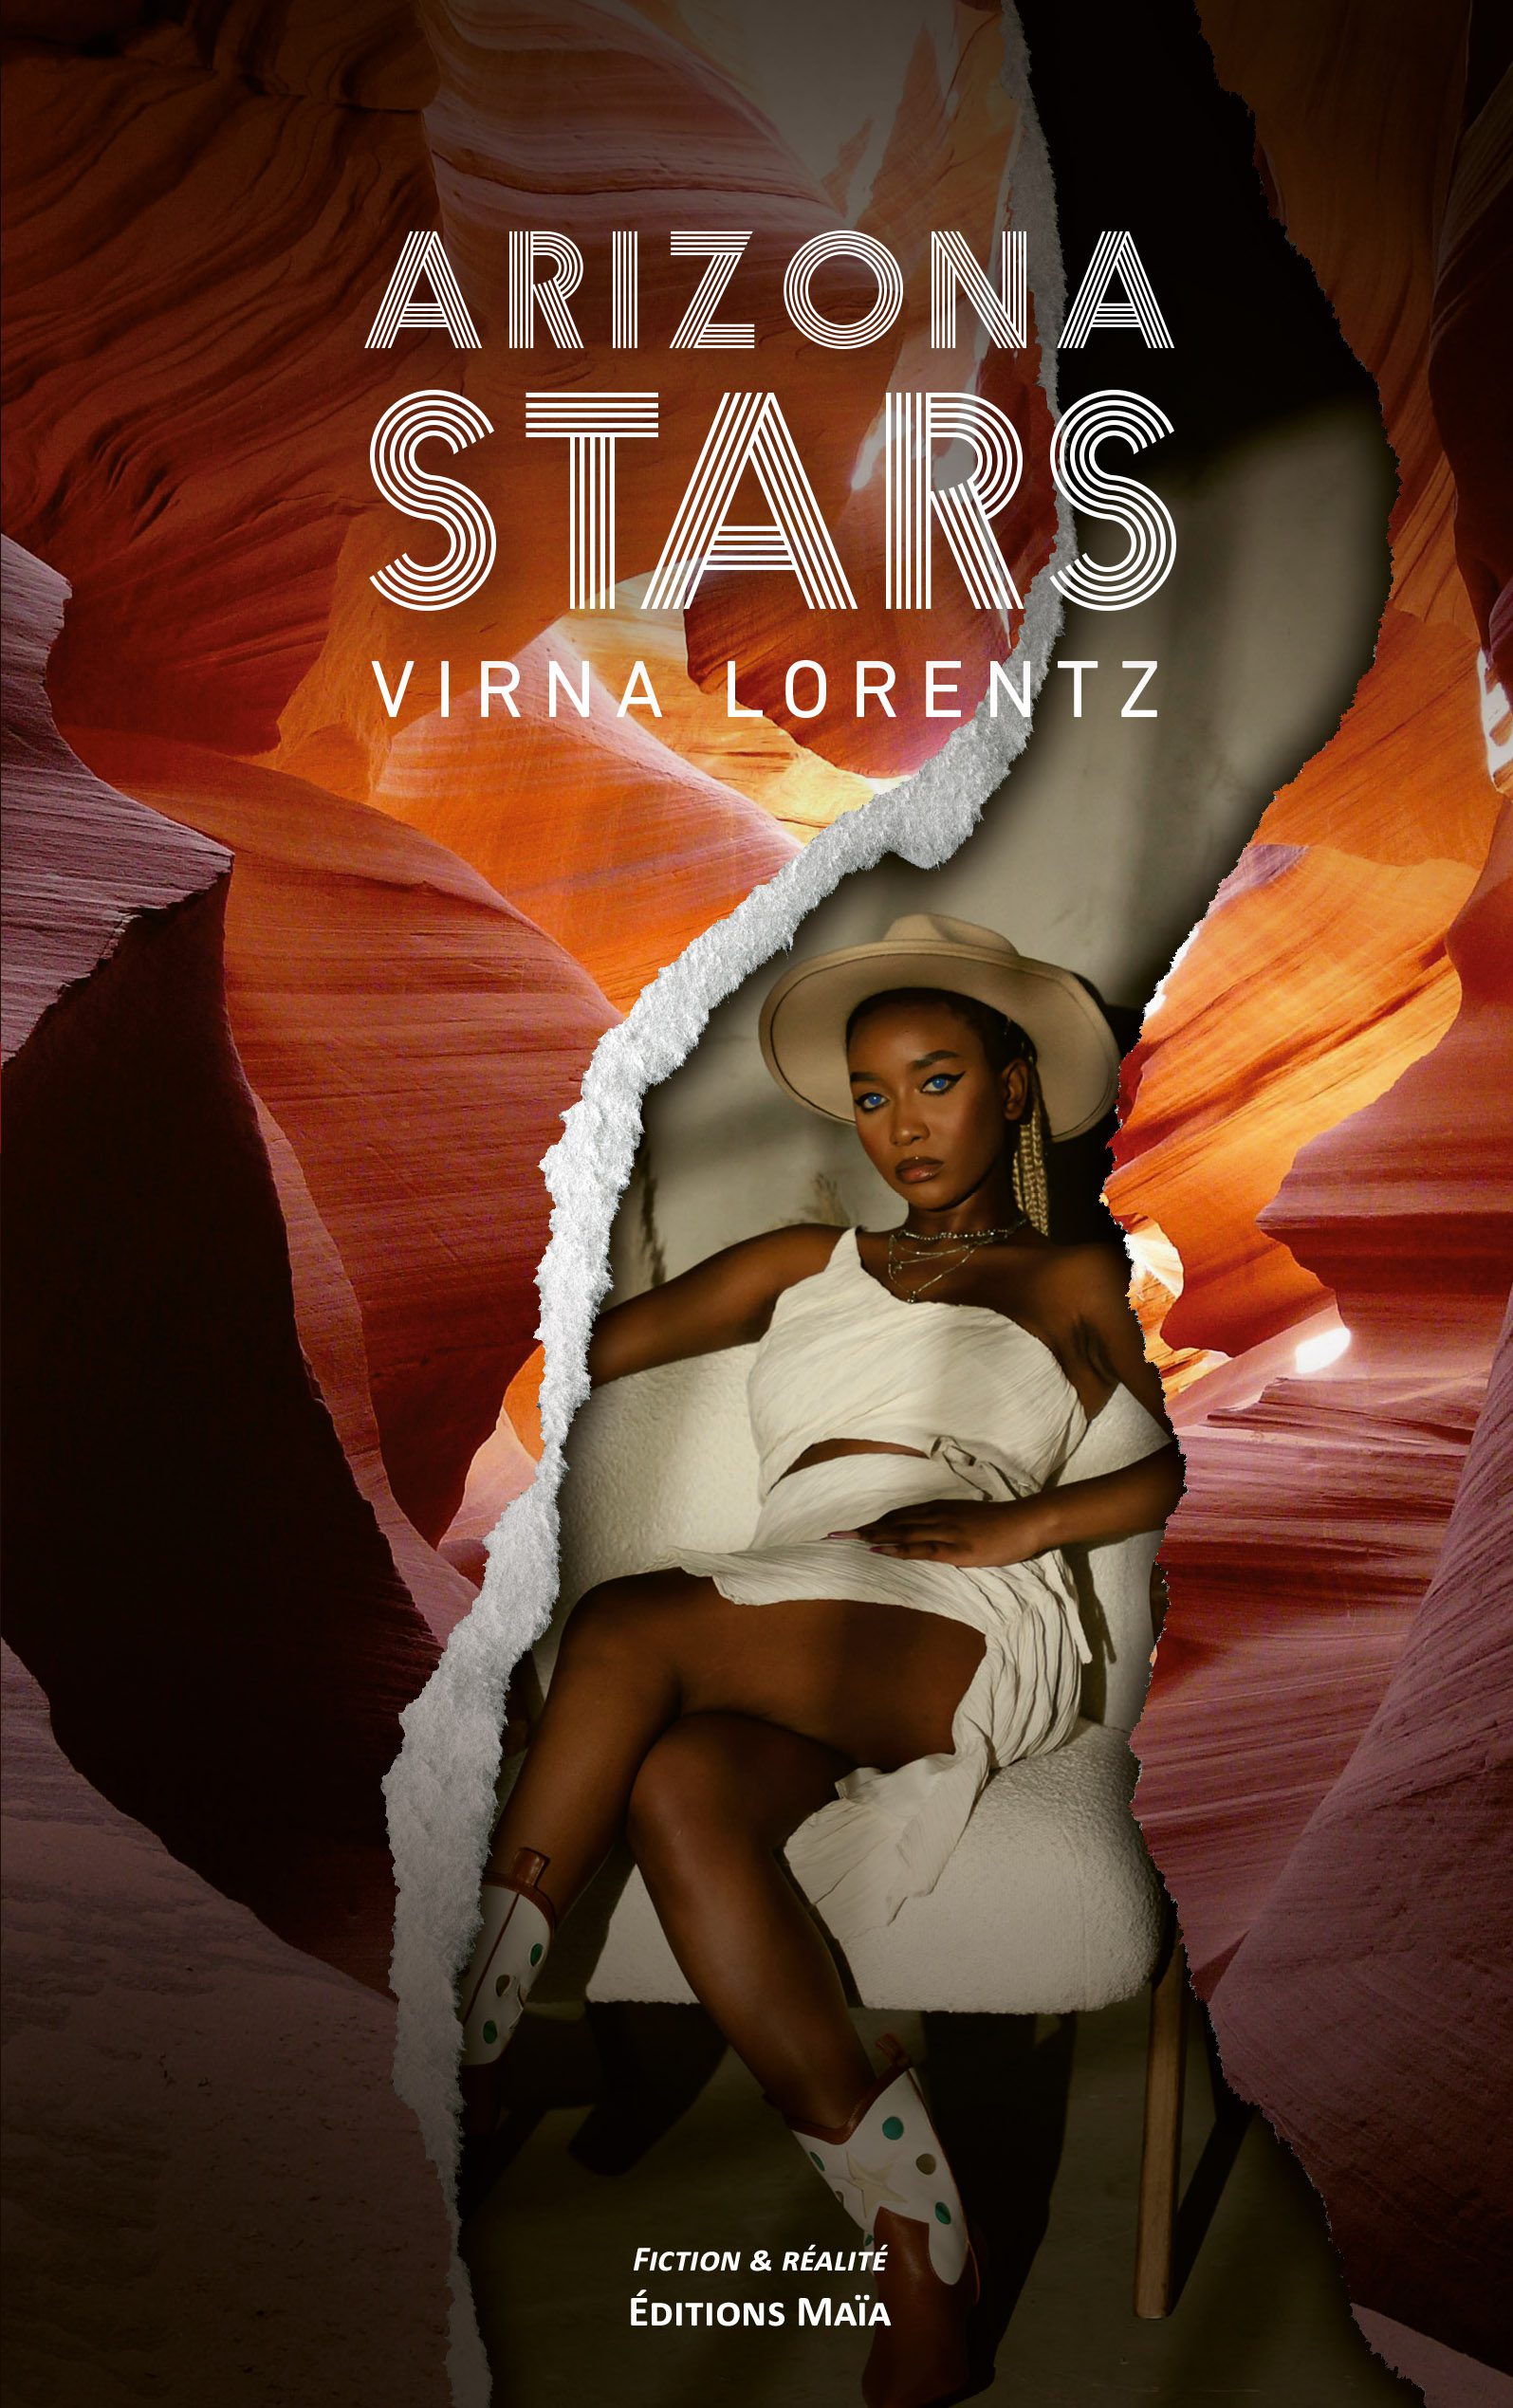 Entretien avec Virna Lorentz – Arizona stars